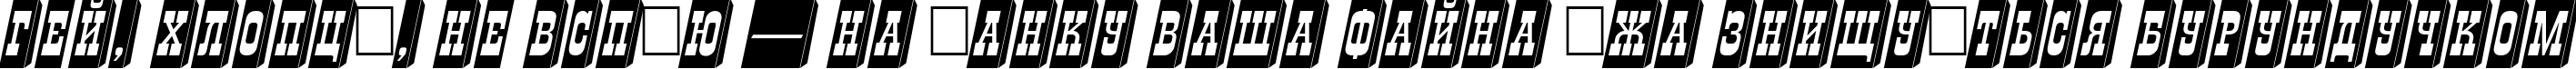 Пример написания шрифтом a_GildiaTiulPillar3D Italic текста на украинском